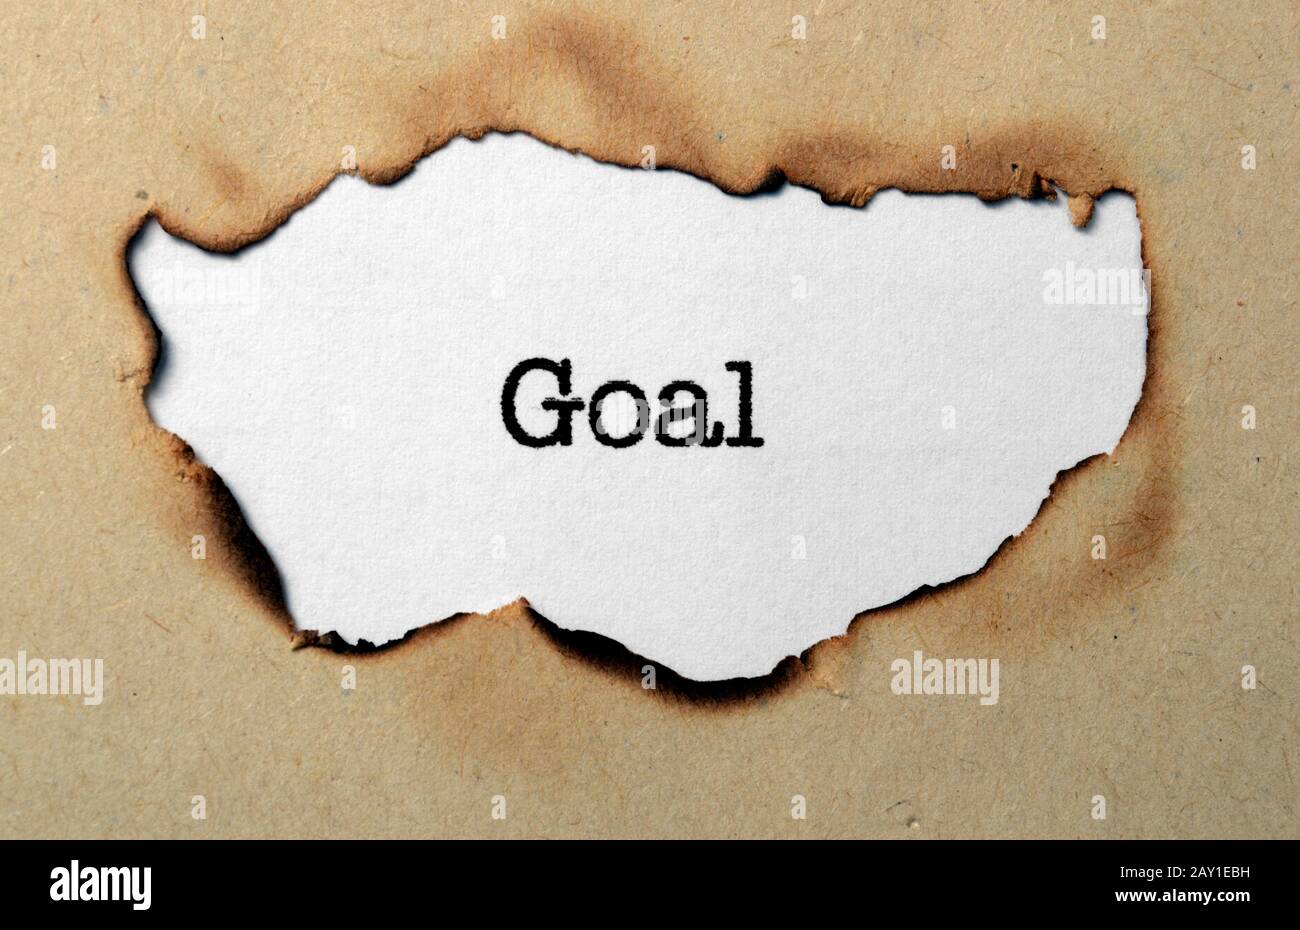 Goal concept Stock Photo